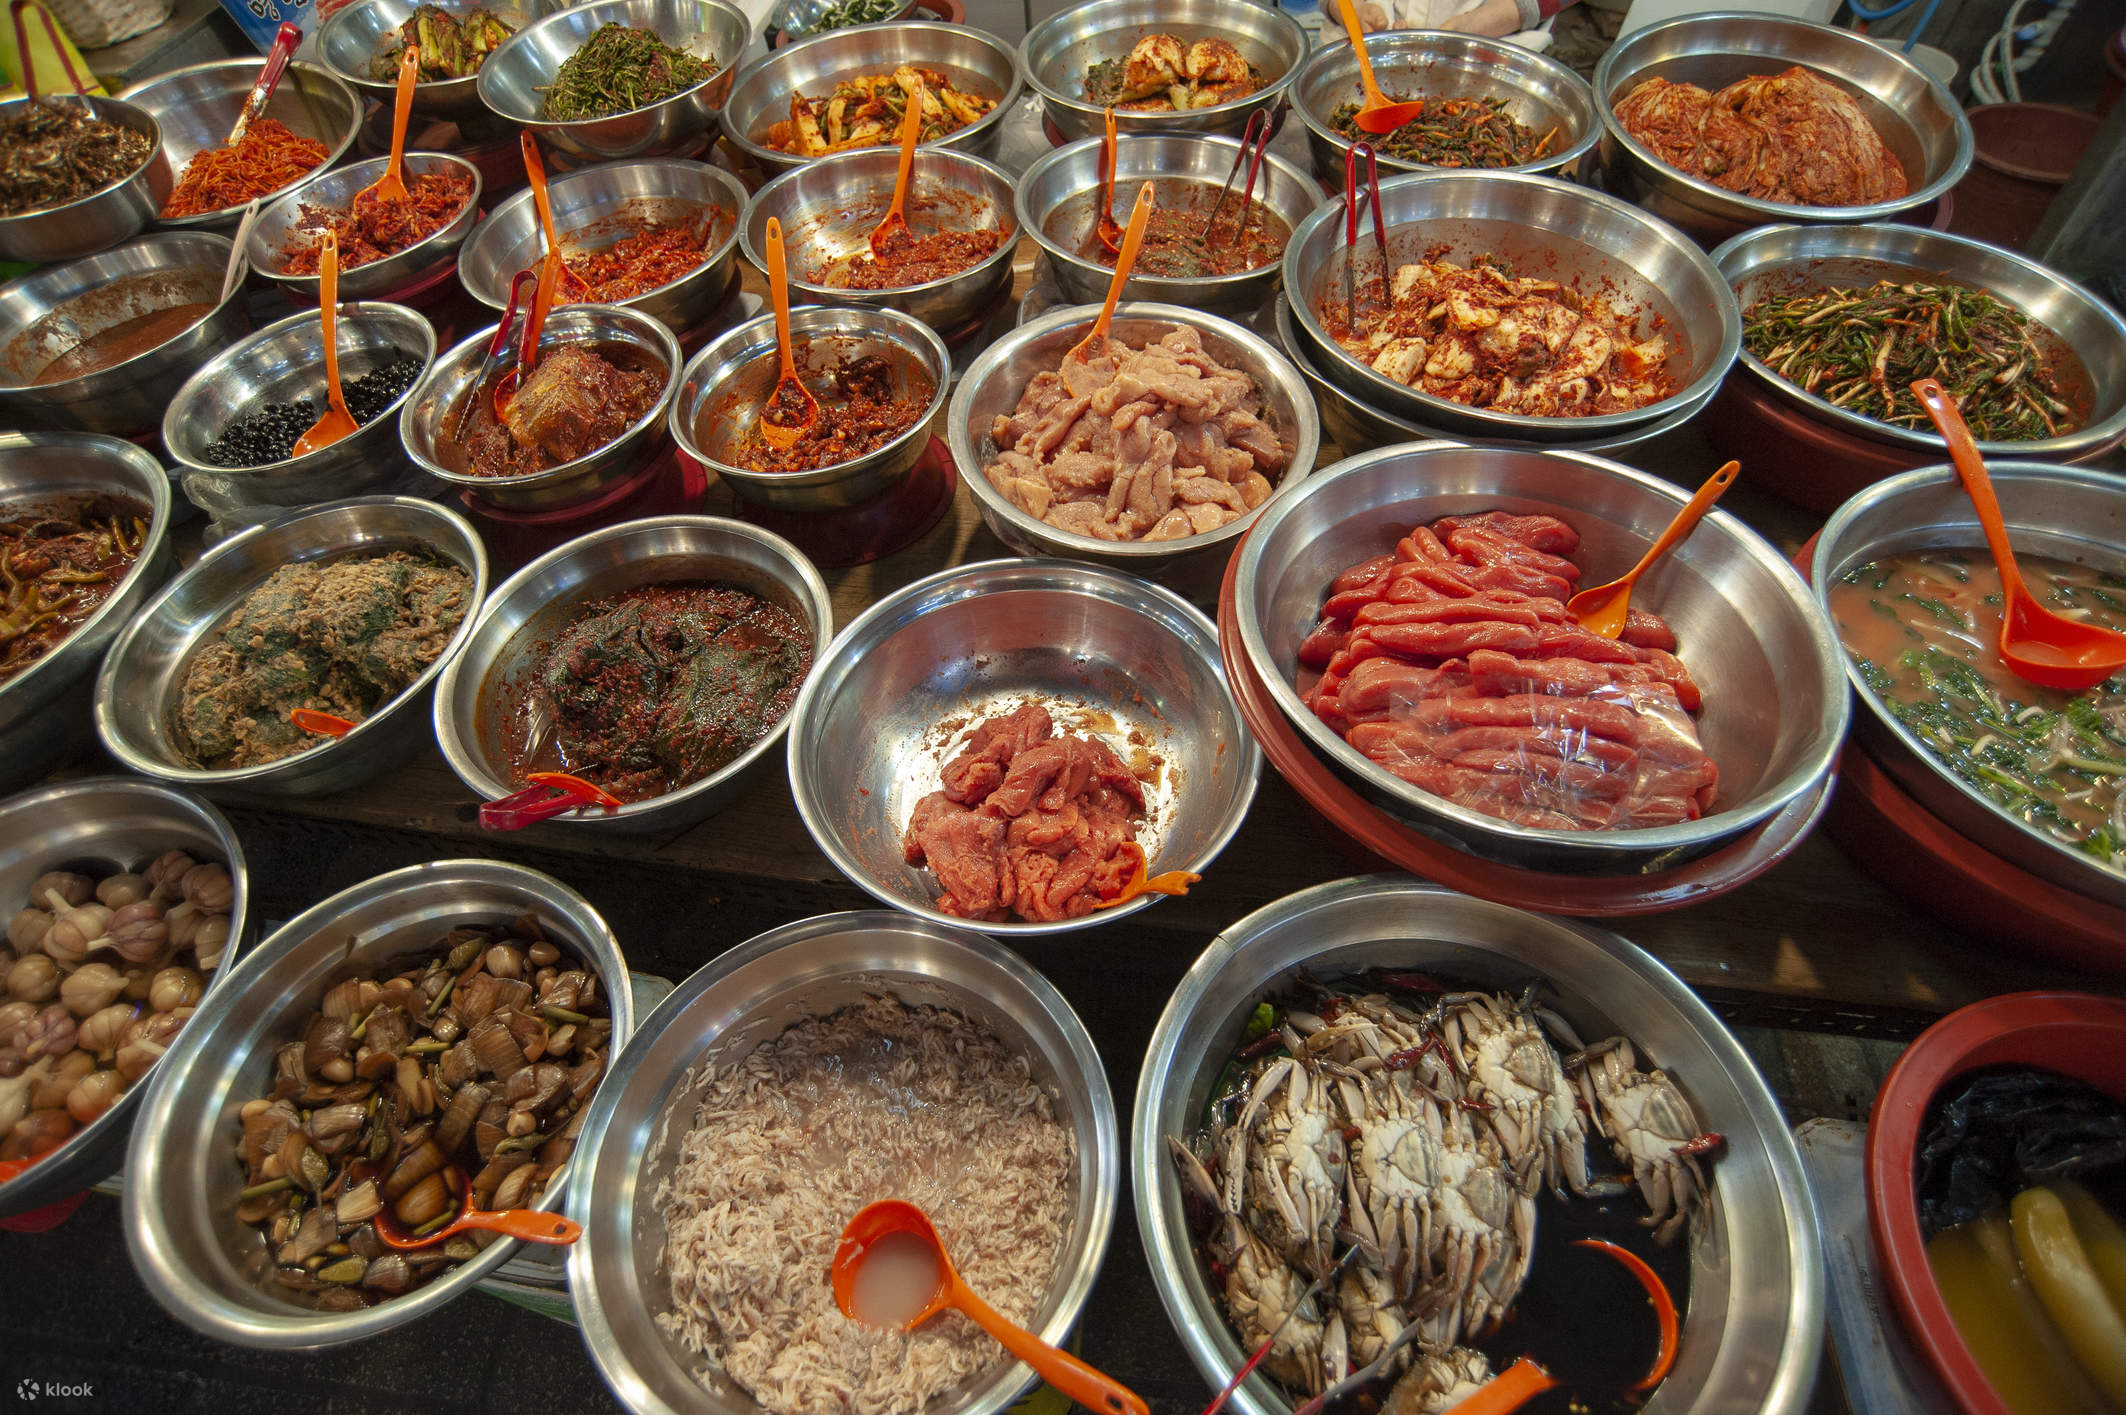 ทัวร์ตลาดปลาจากัลชี & ตลาดอาหารเกาหลีในปูซาน - Klook ประเทศไทย